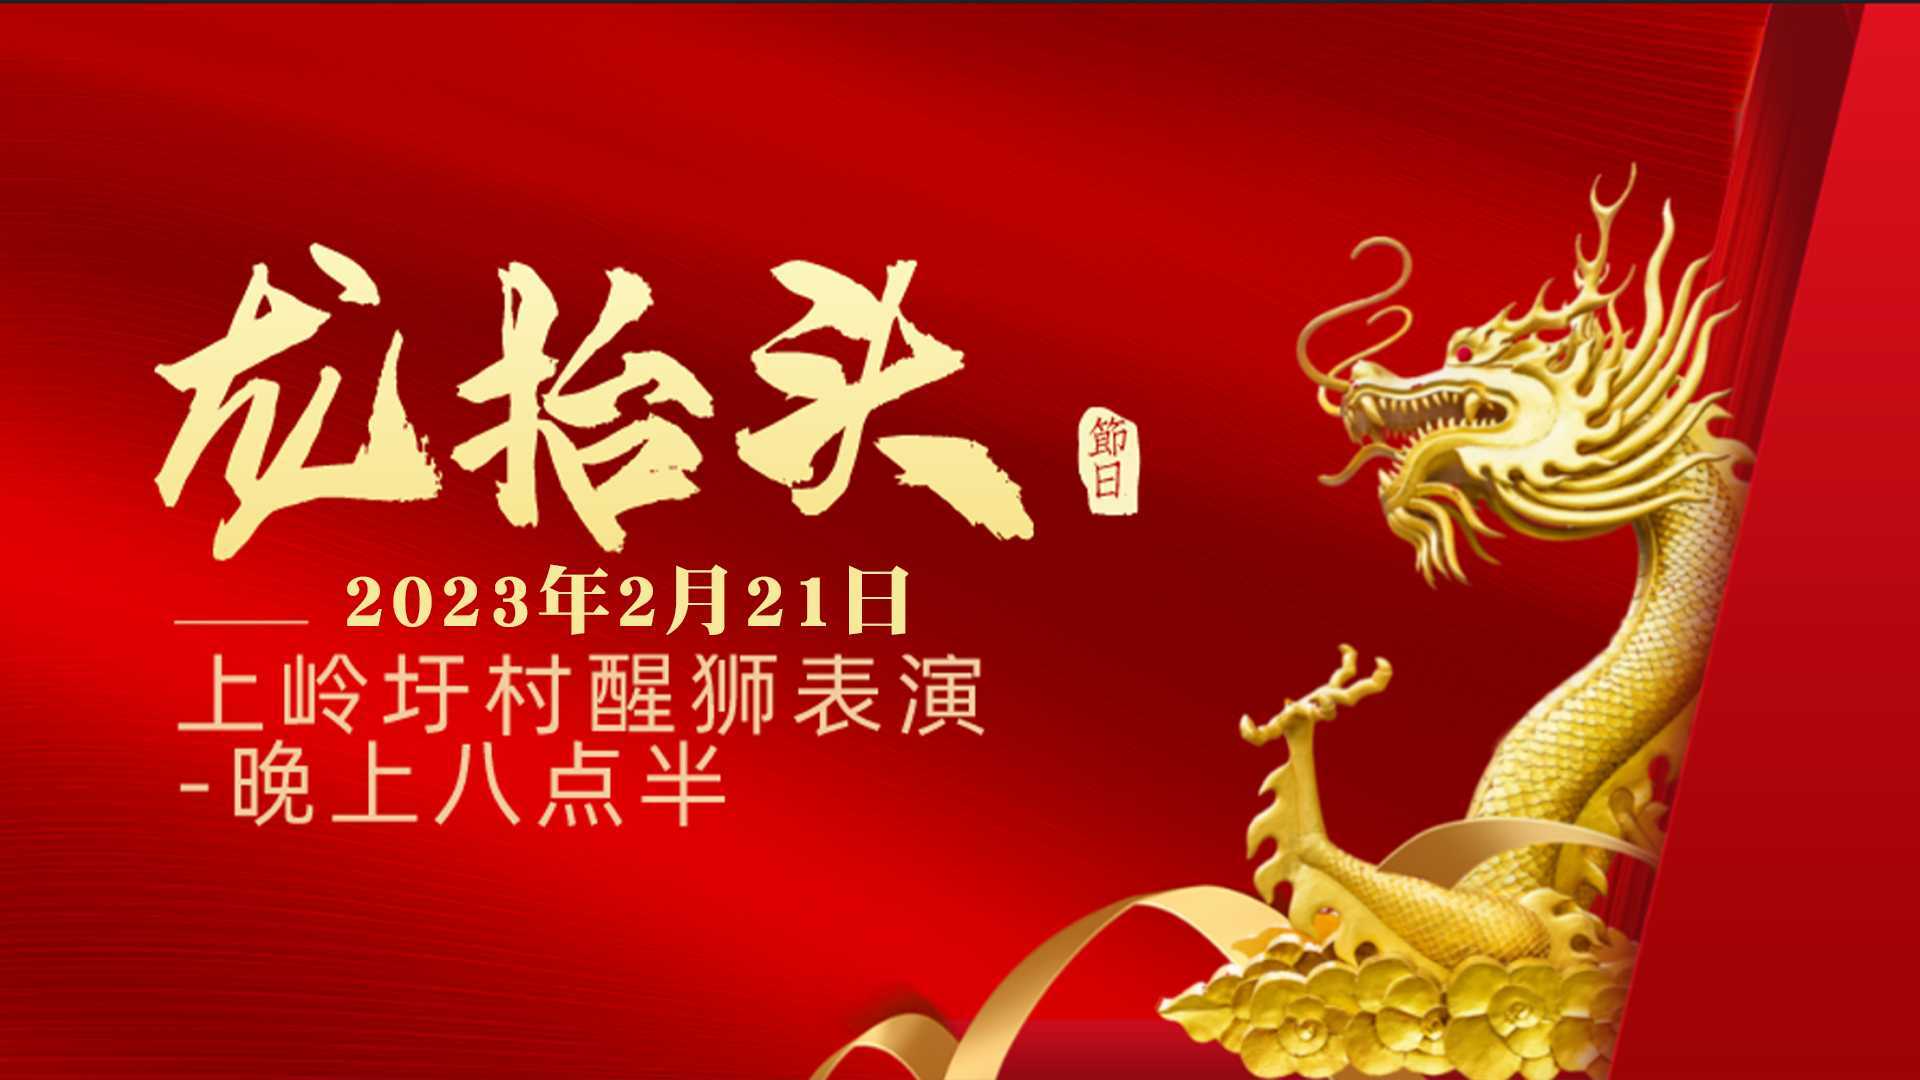 2023年吴川市上岭圩村二月初二舞狮、功夫表演